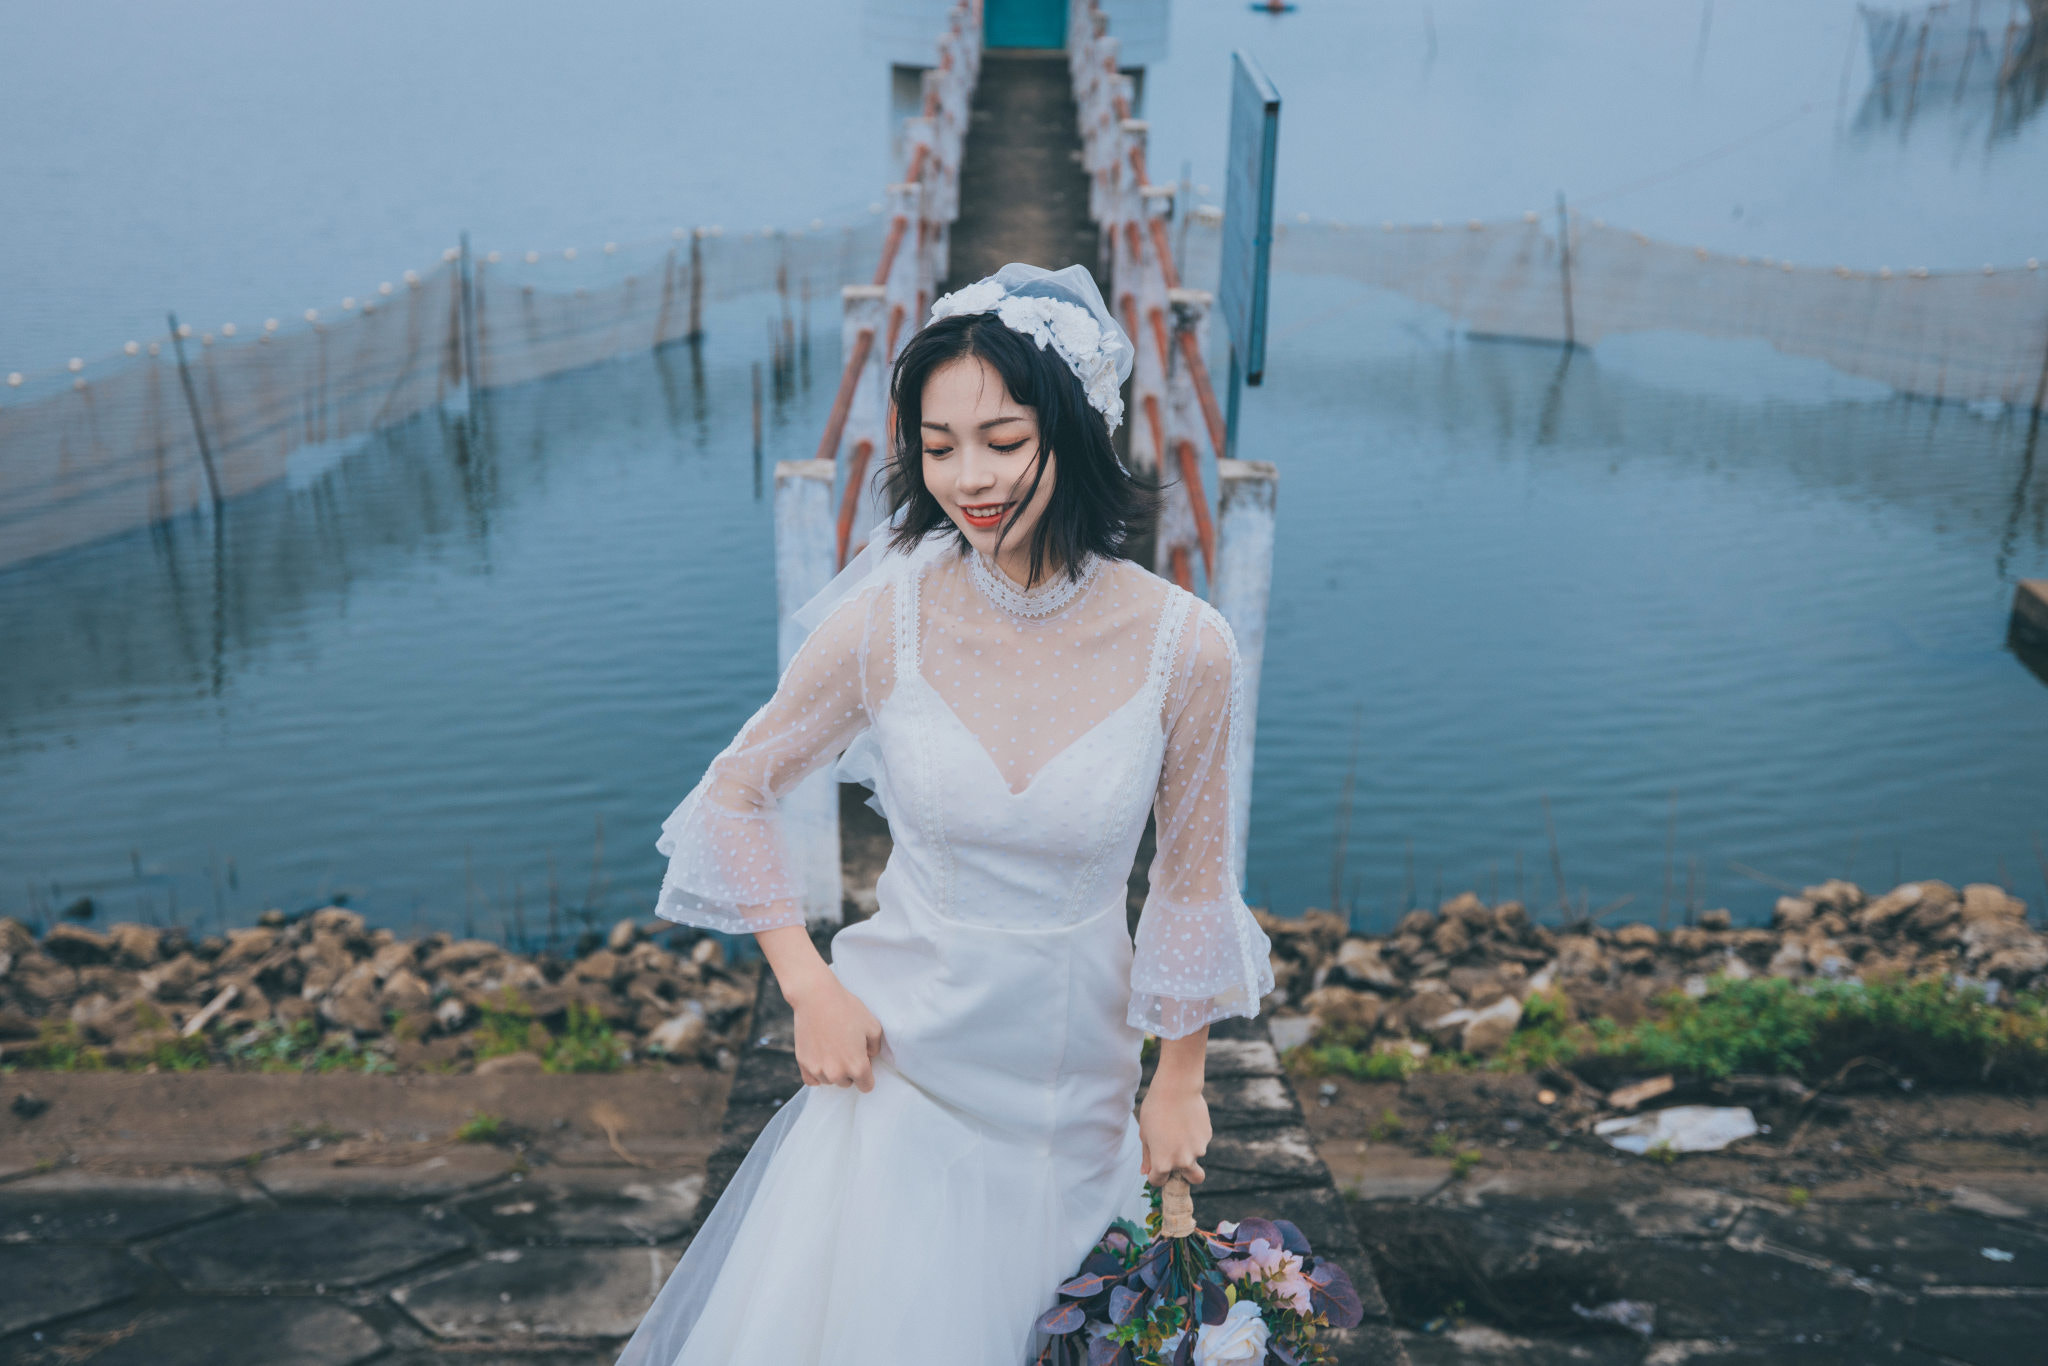 Qin Xiaoqiang Women Asian Smiling Dark Hair White Clothing Fishing Net Water 2048x1366